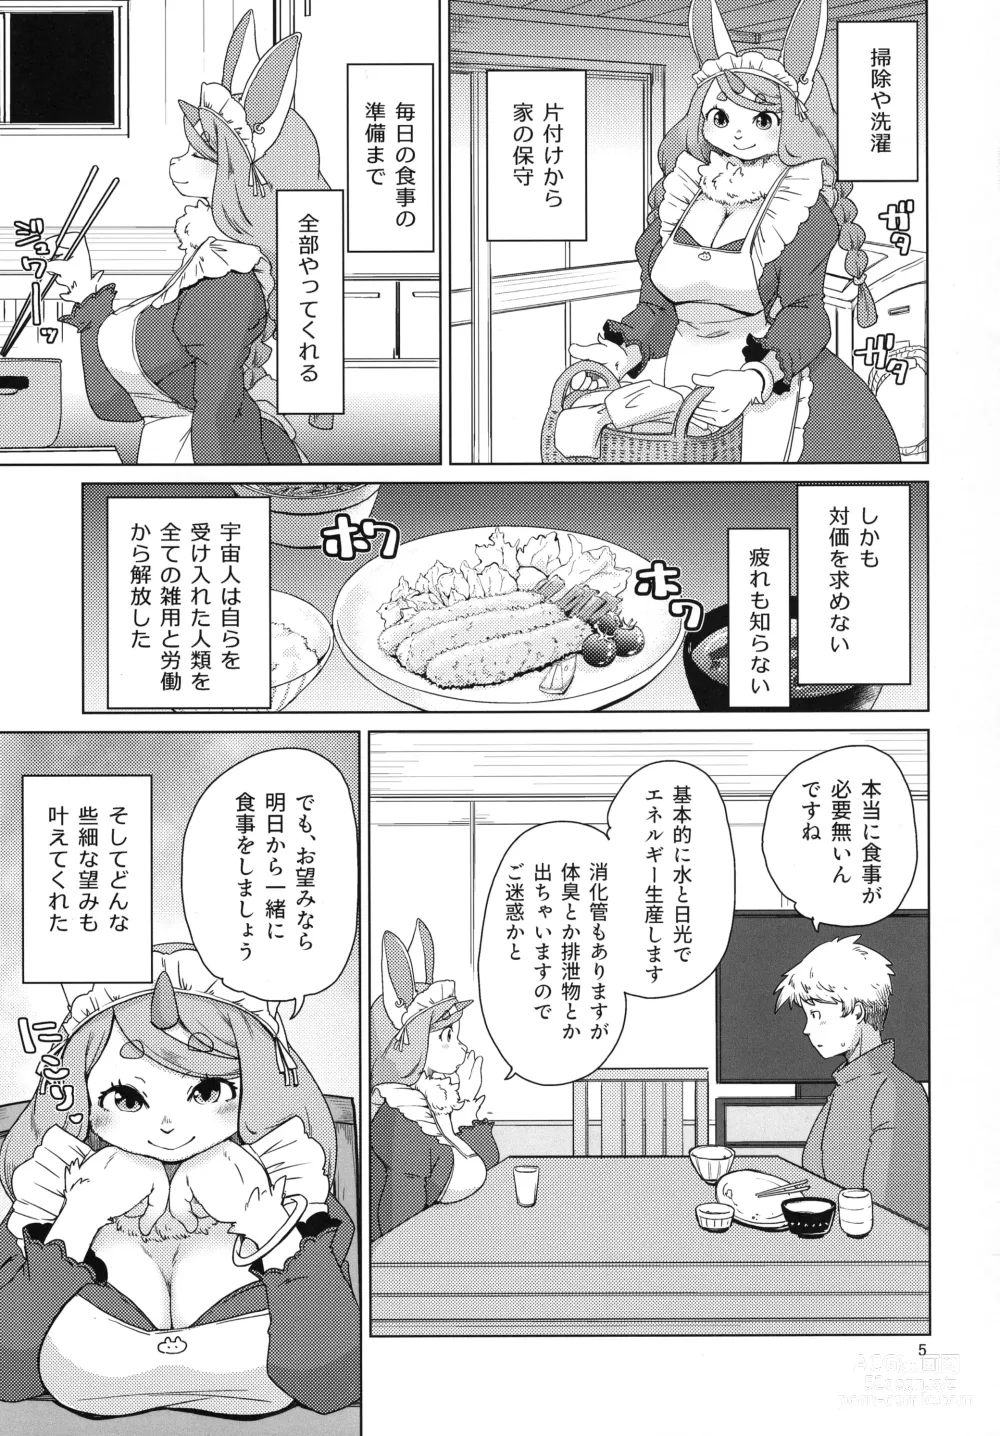 Page 5 of doujinshi Mofumofu Invasion